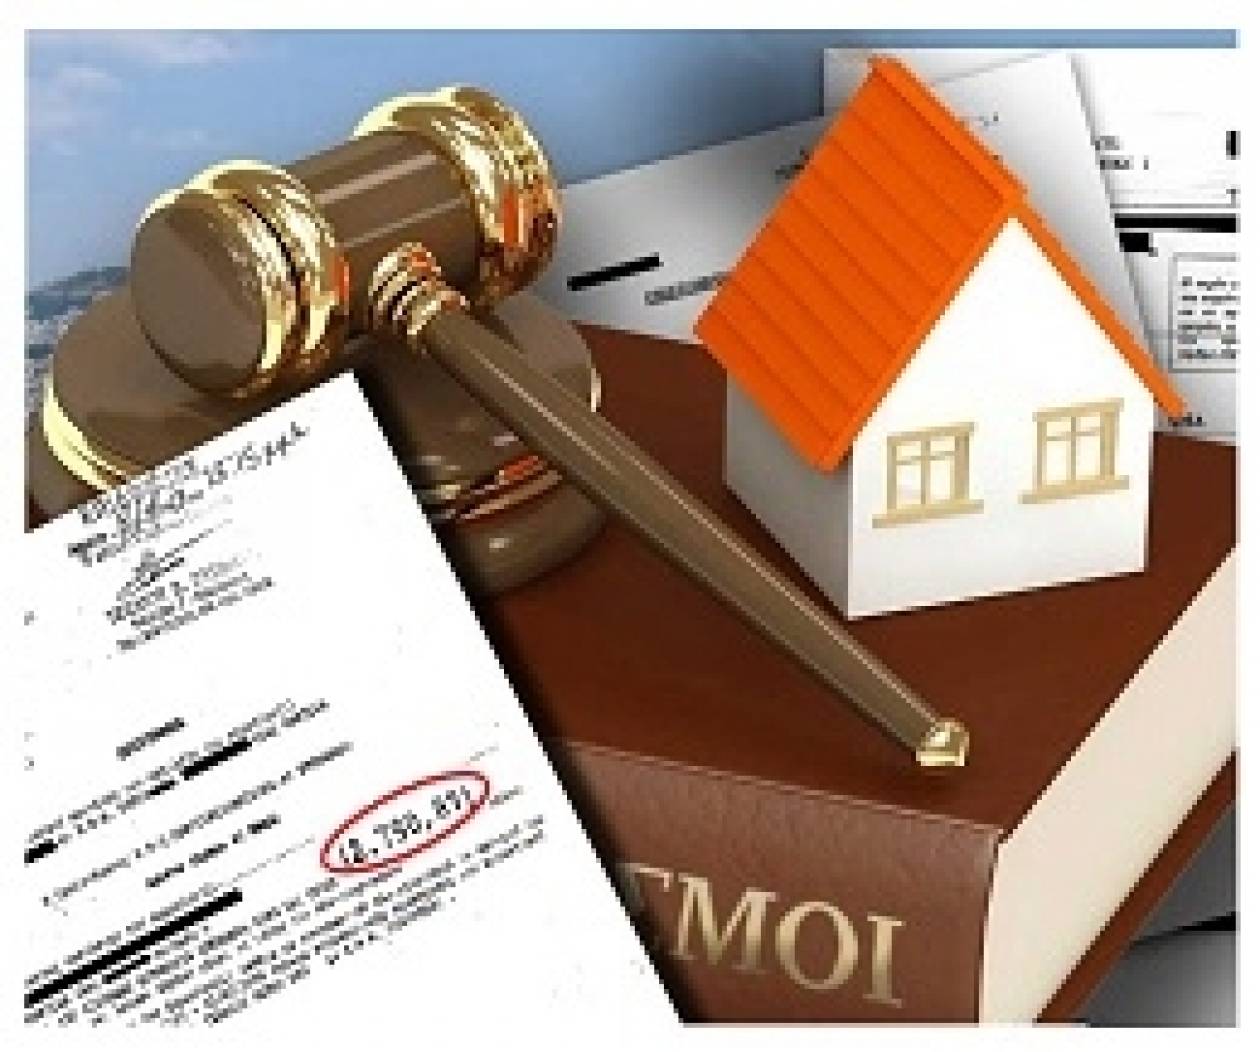 ΝΤΡΟΠΗ: Κατάσχεση οικίας για οφειλή 2.790€ από τη Δ.Ο.Υ Κηφισιάς